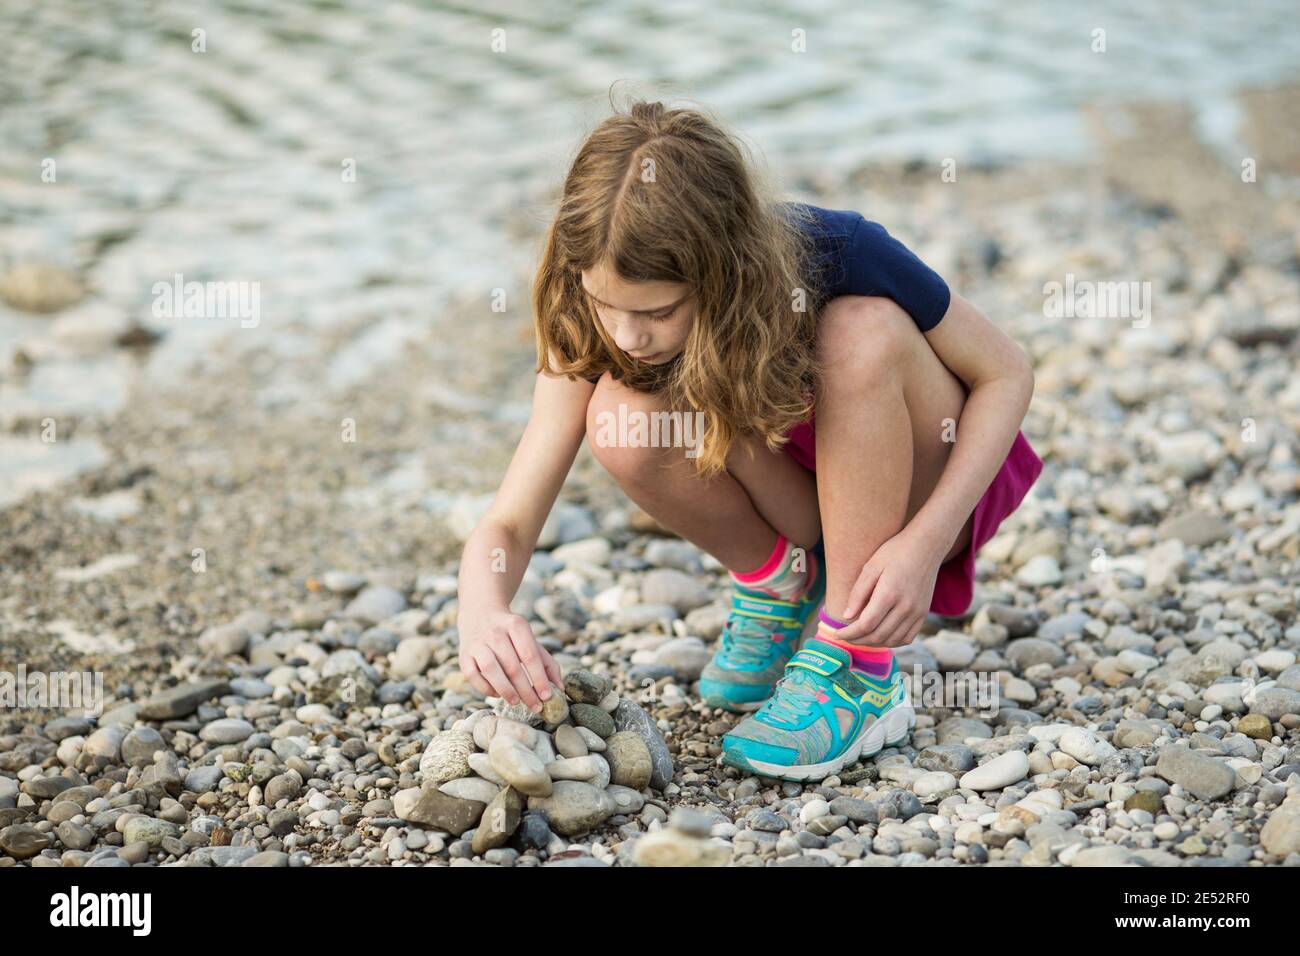 Ein elfjähriges Mädchen stapelt am Ufer der Isar in München Steine in eine Kaira. Stockfoto